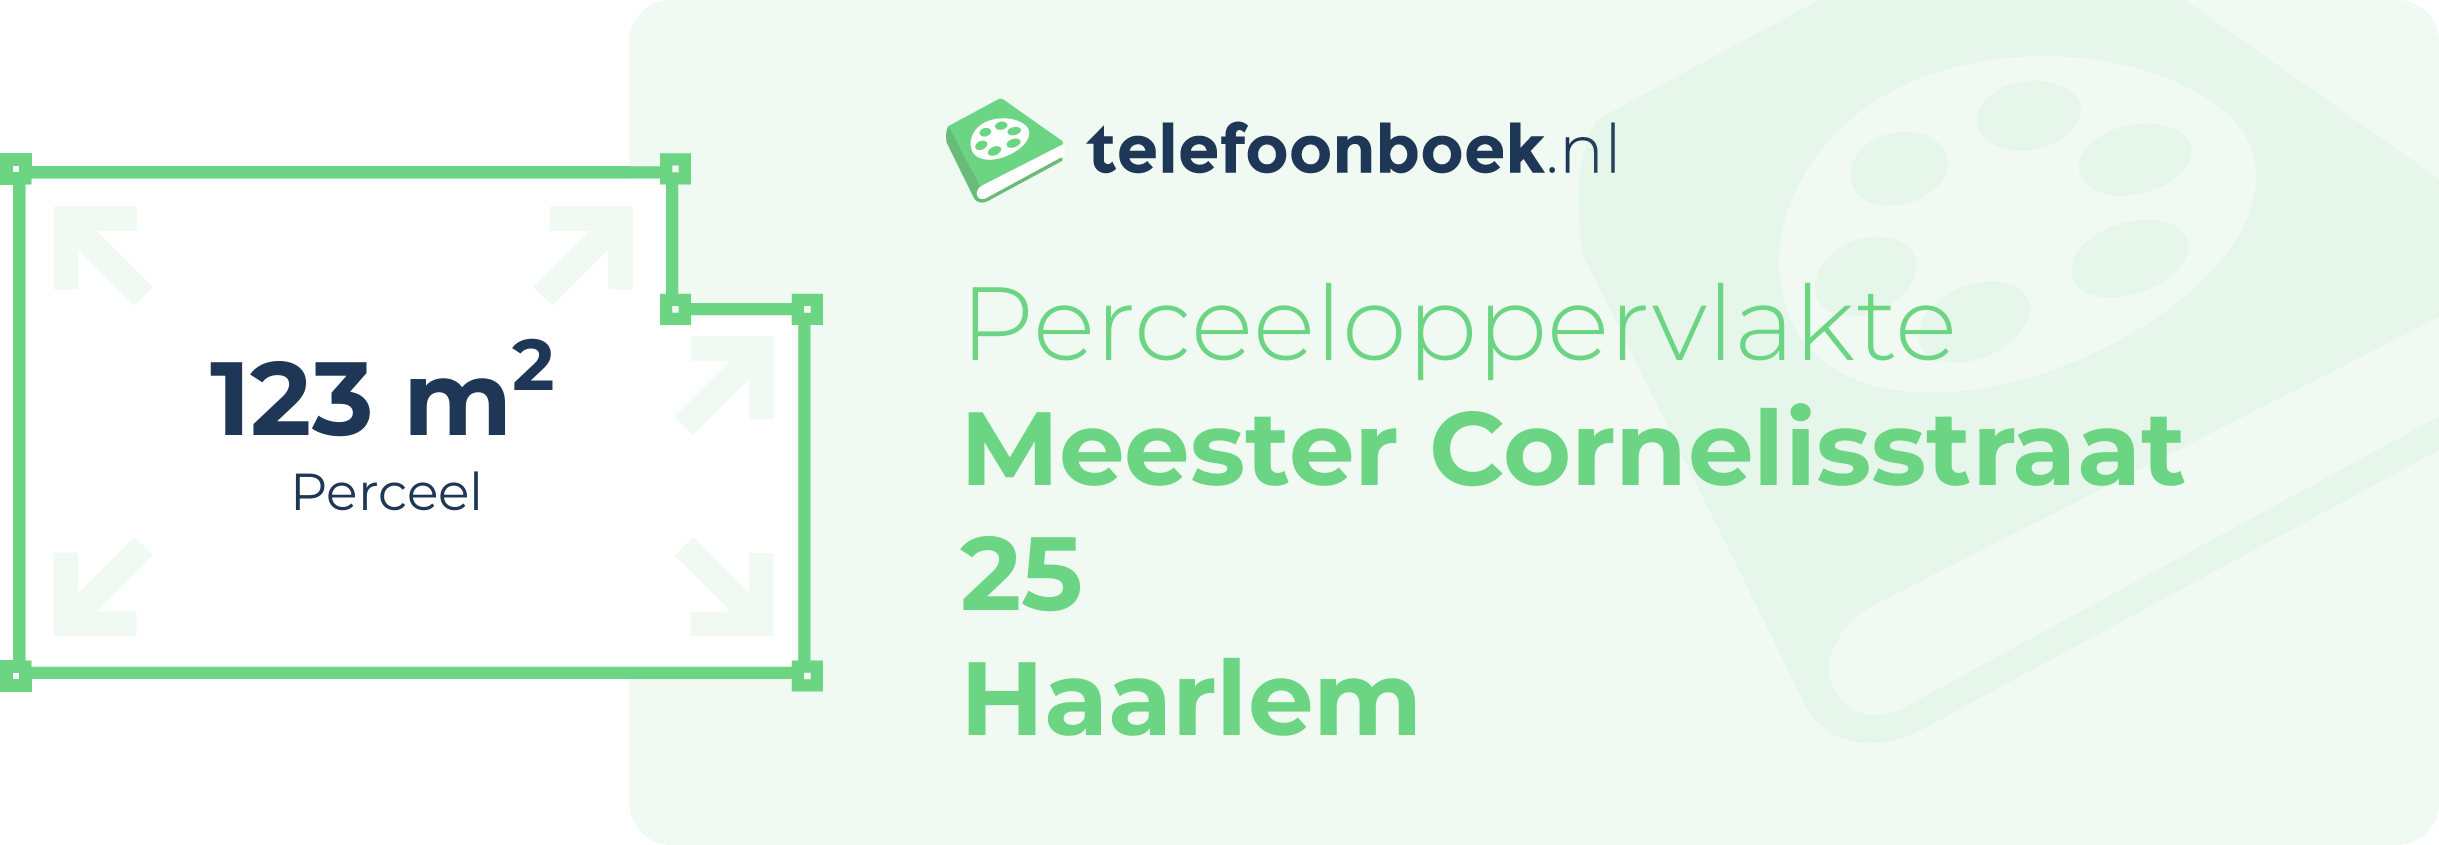 Perceeloppervlakte Meester Cornelisstraat 25 Haarlem